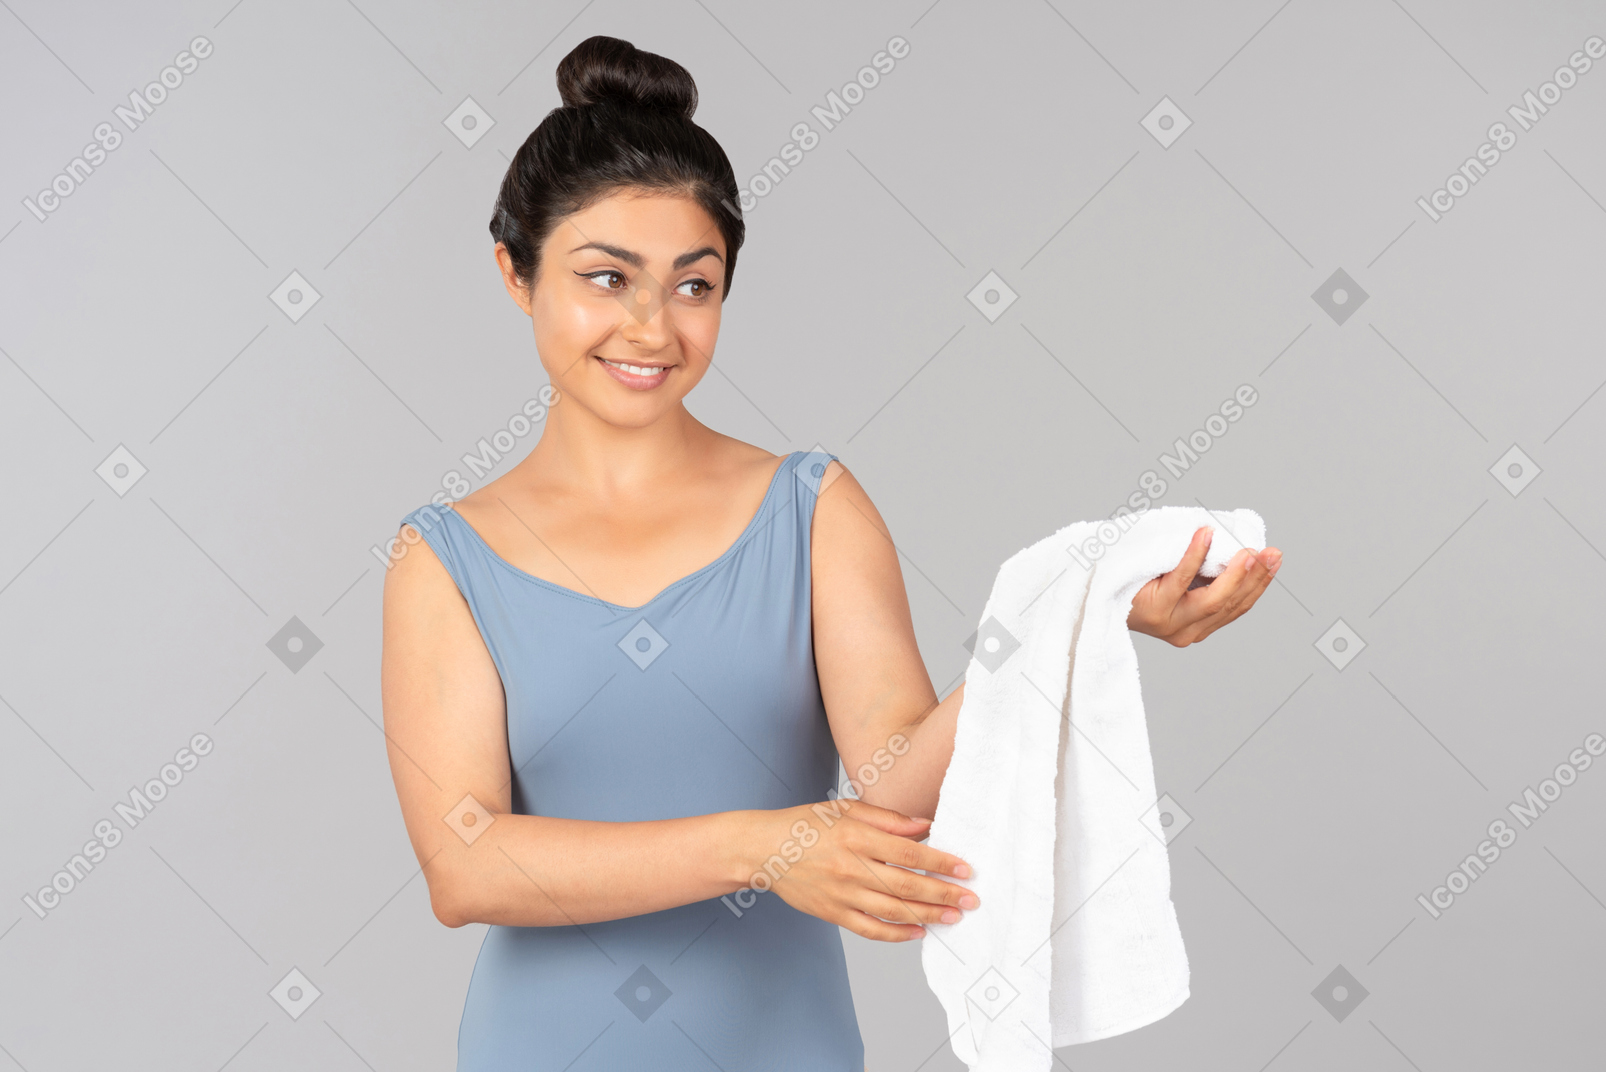 Mujer india joven sonriente que sostiene la toalla blanca